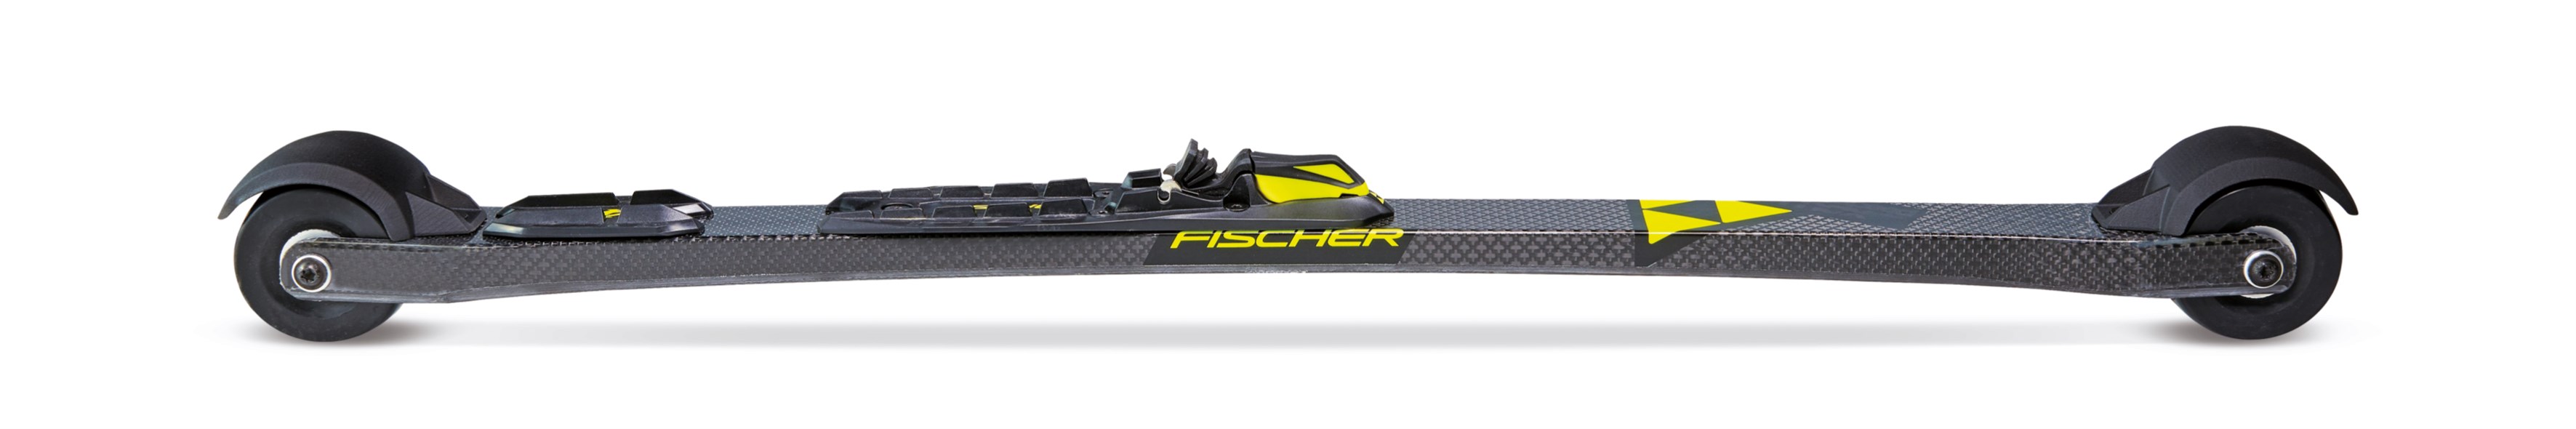 Fischer Speedmax Classic - Model Saison 21/22